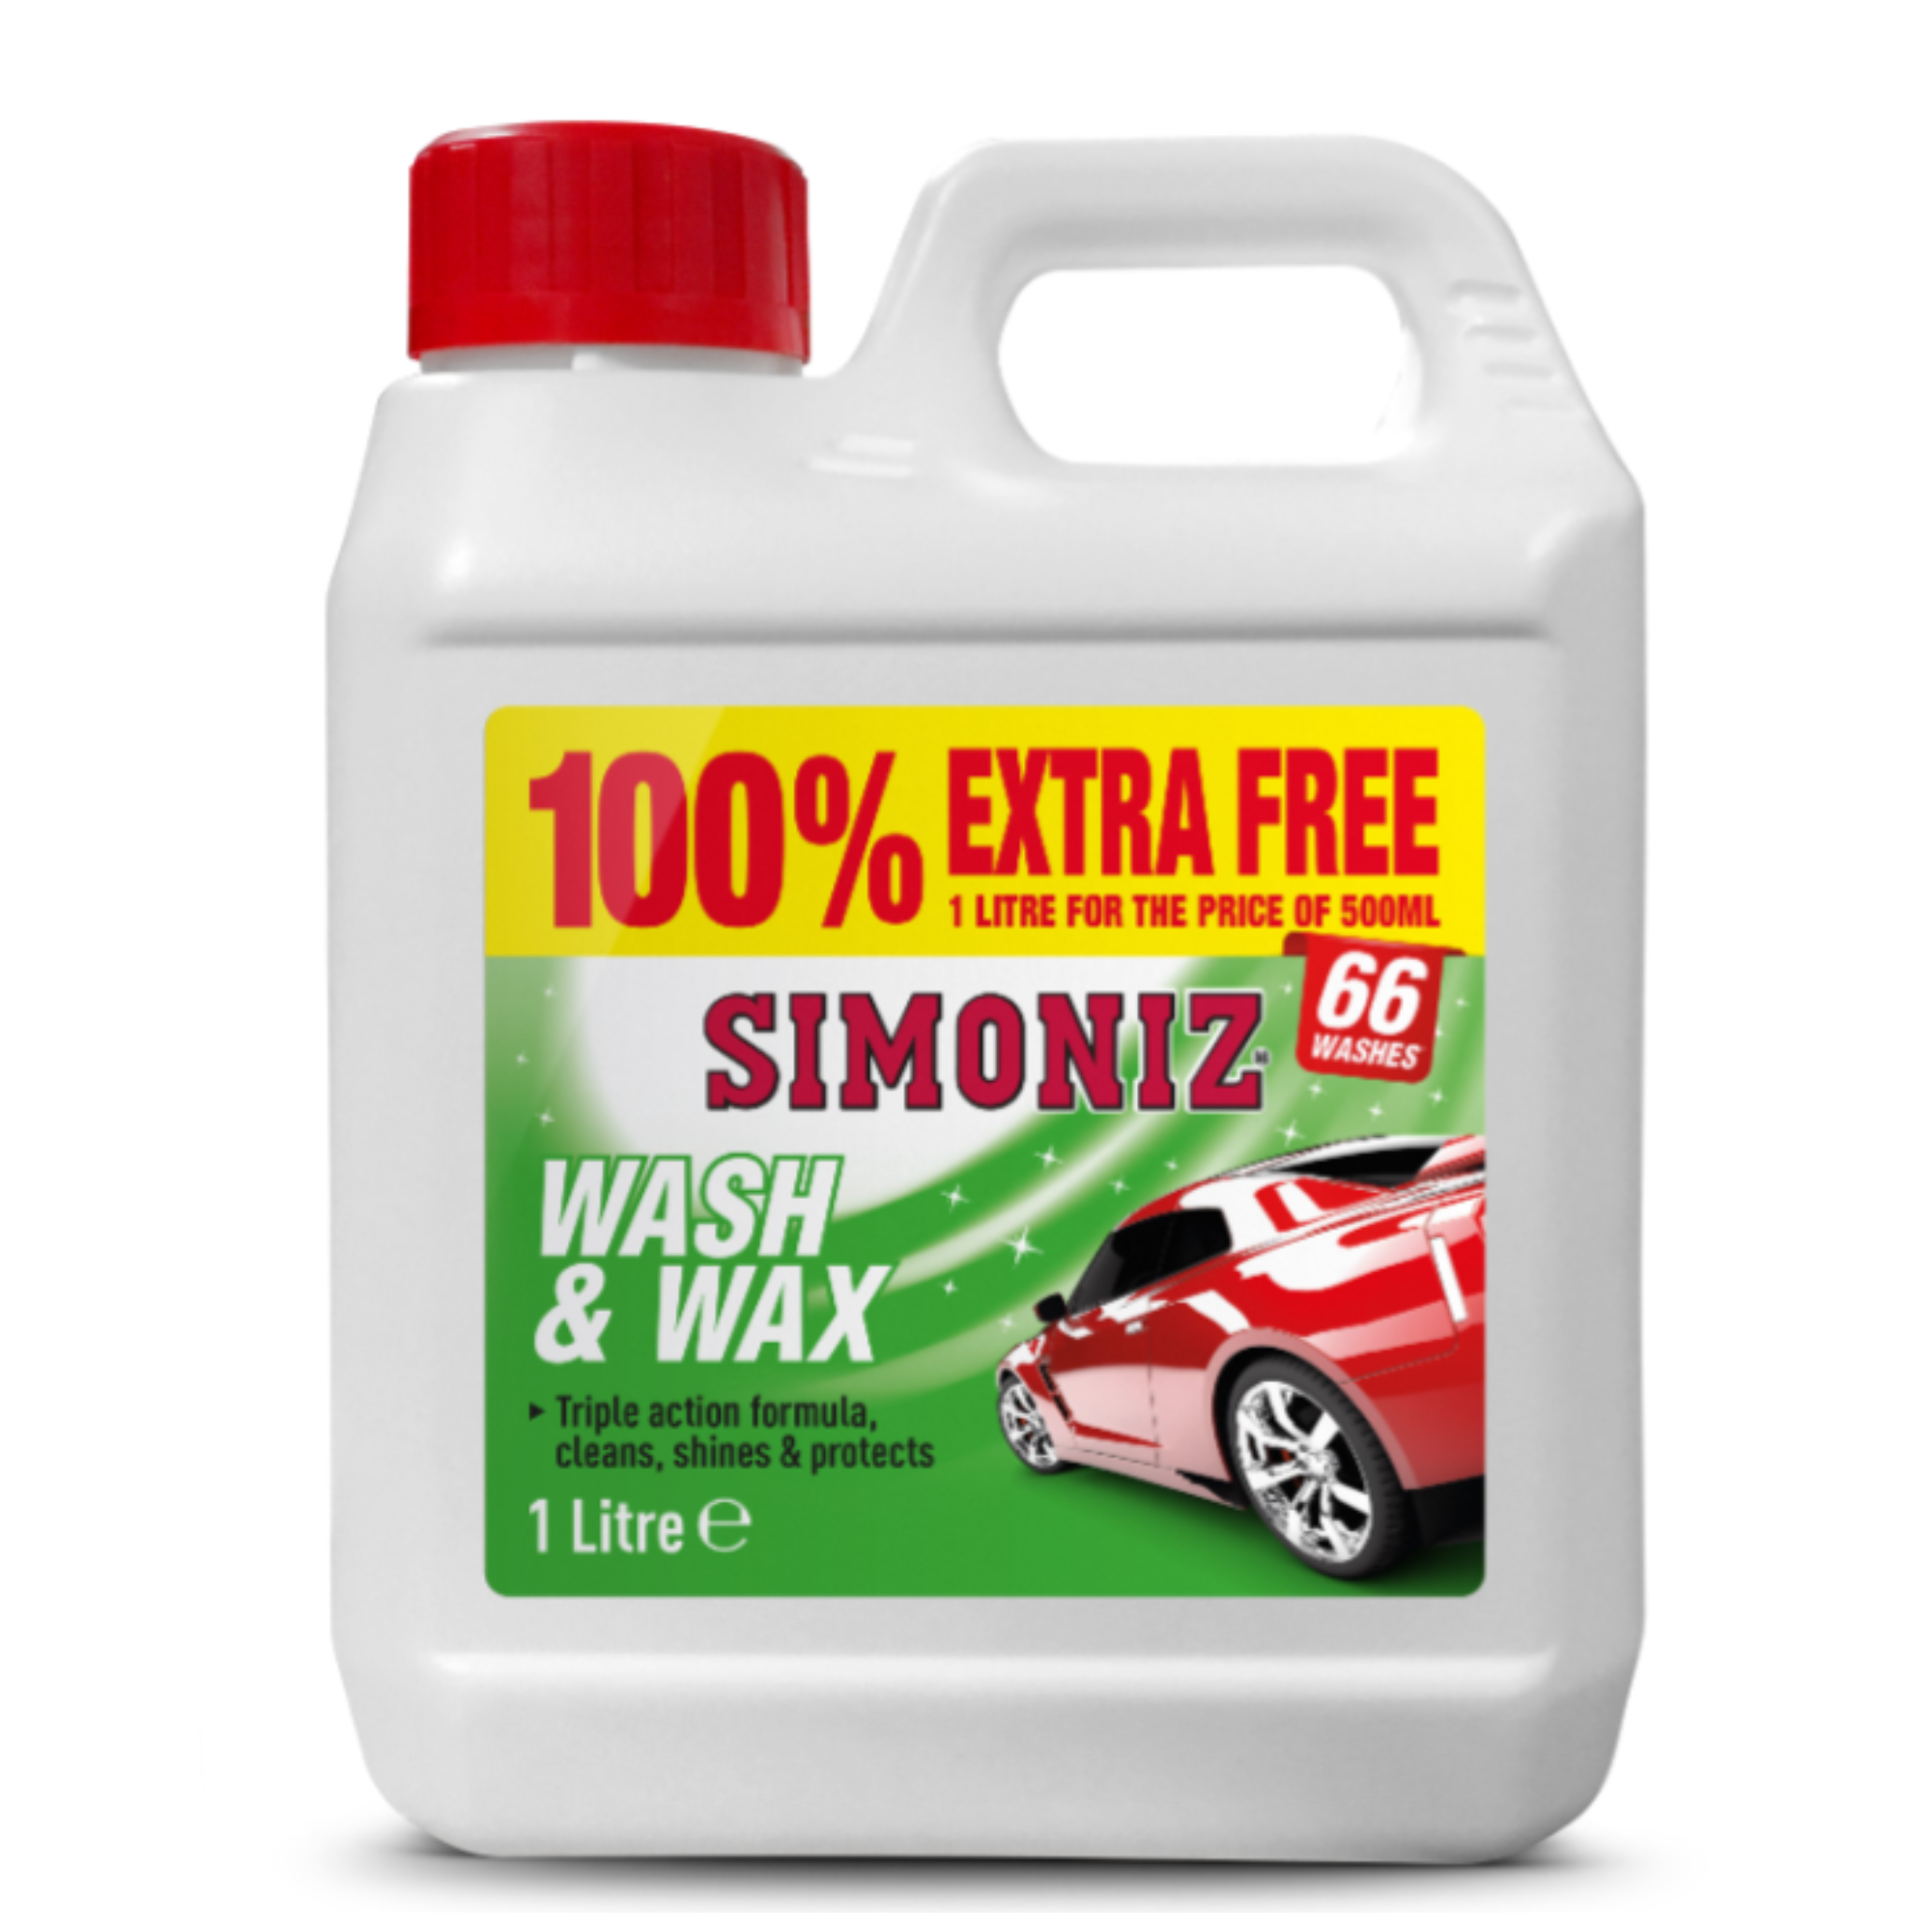 Simoniz Wash & Wax 500ml + 100% Extra Free 1L